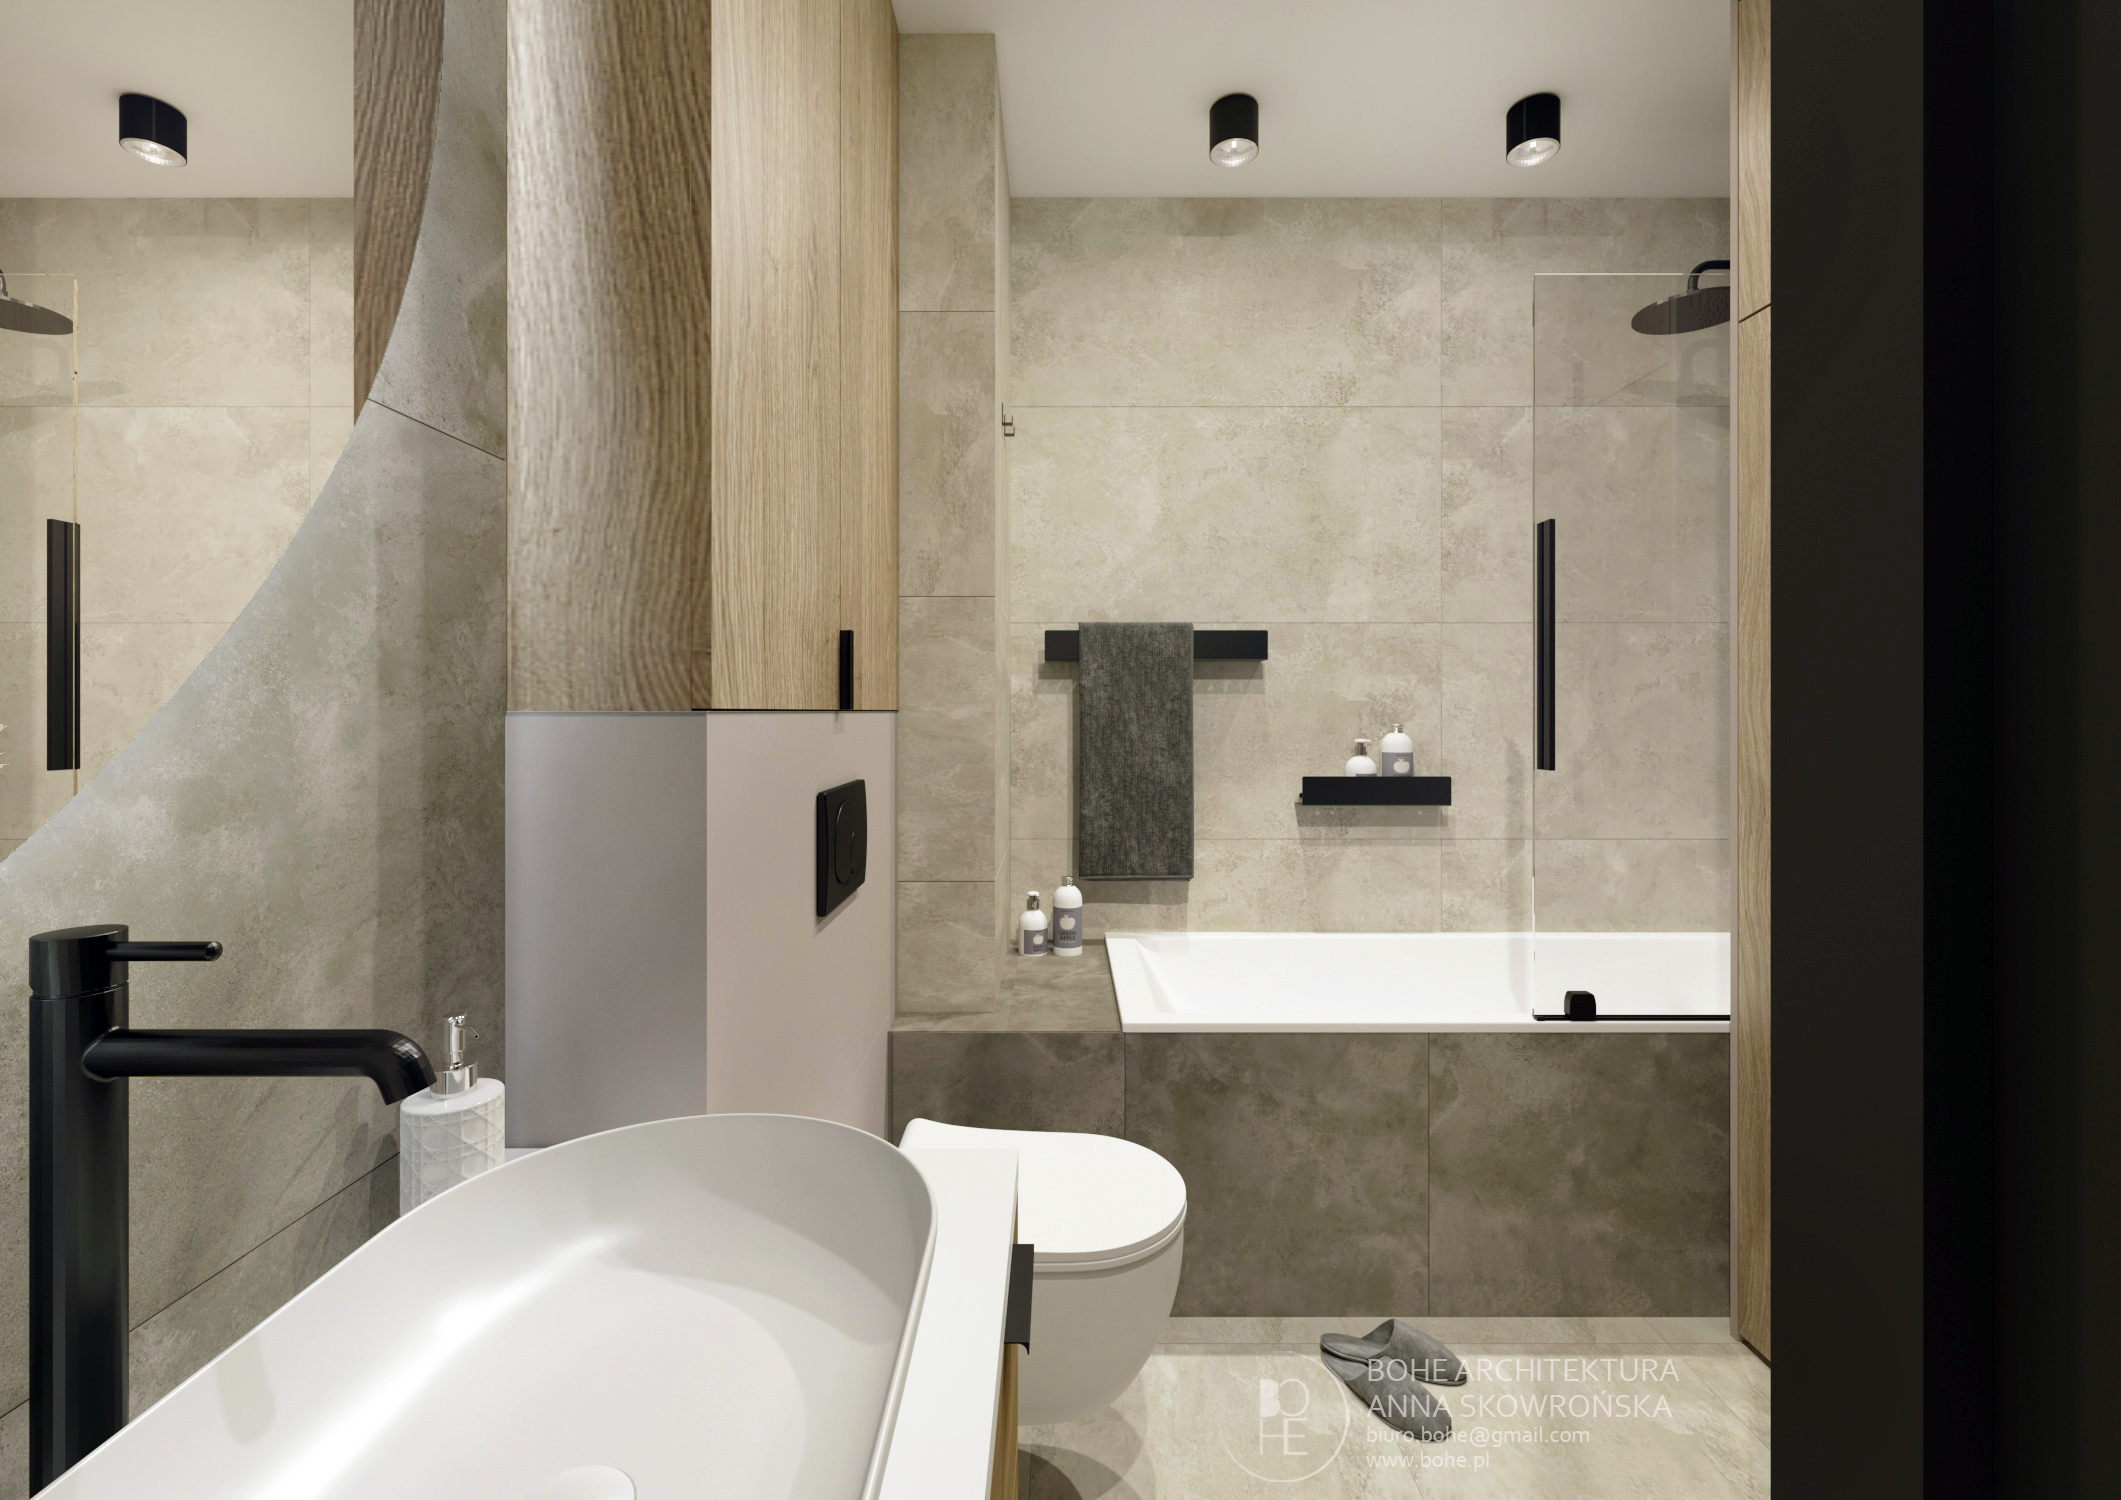 projekt dużej łazienki okrągłe docięte lustro czarna armatura biała toaleta szyba prysznicowa przy wannie